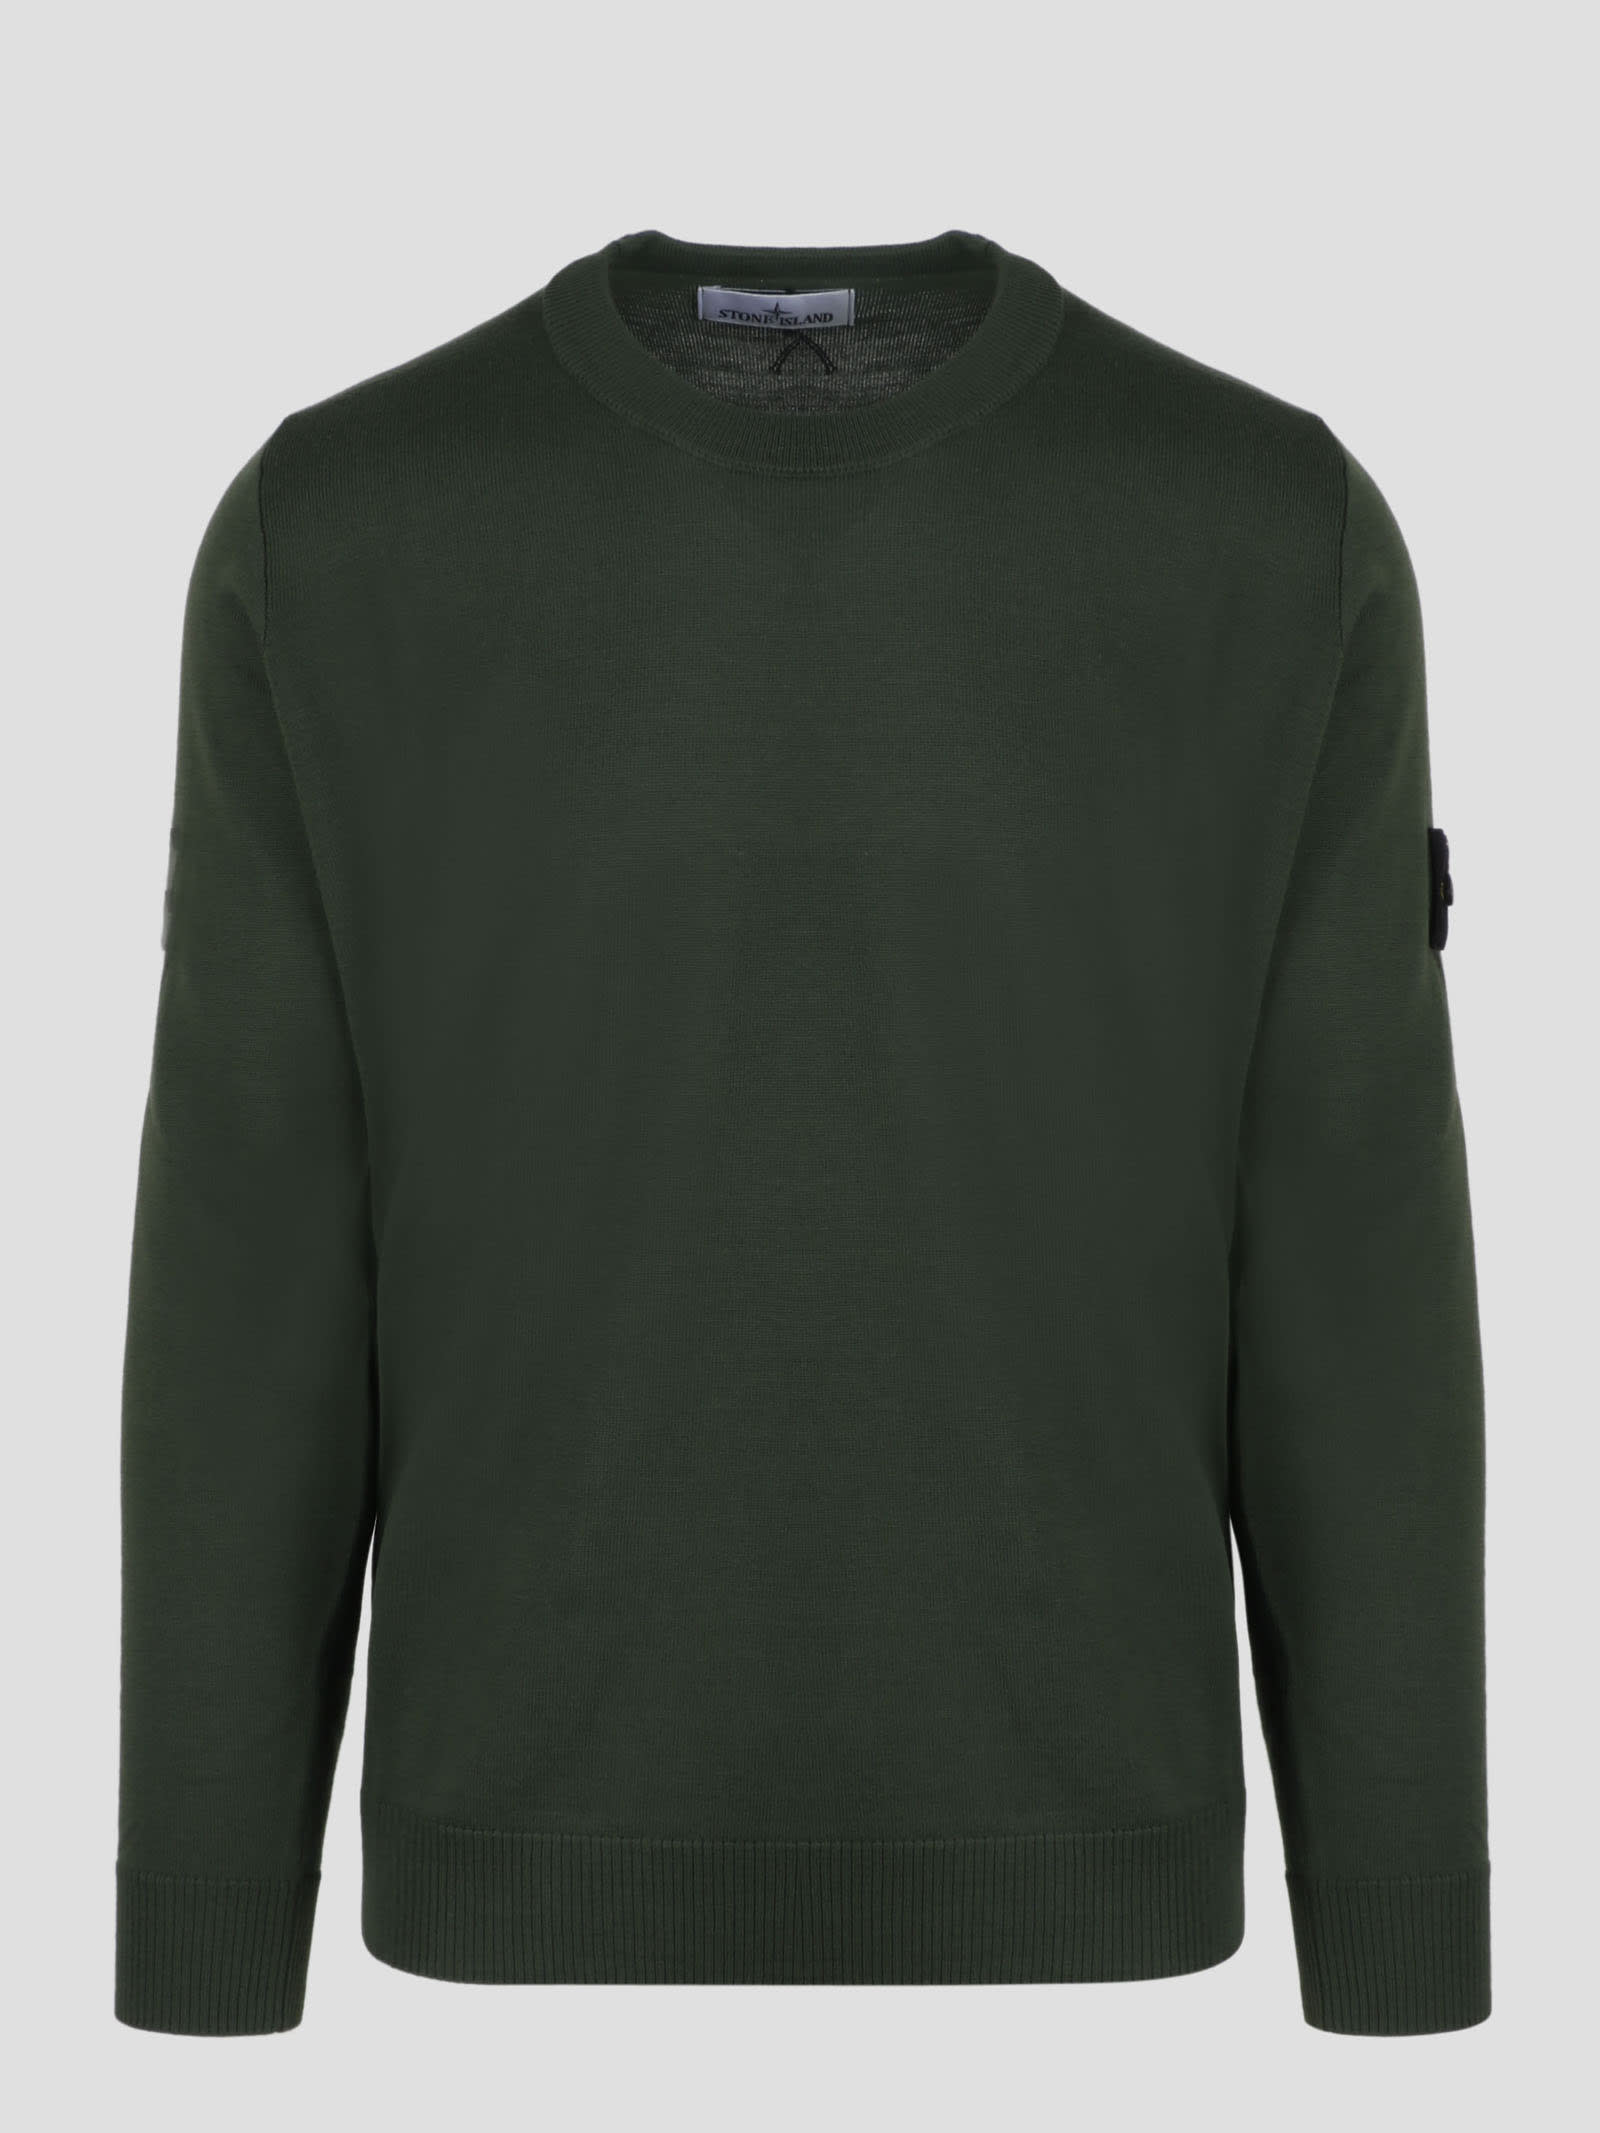 Stone Island Merino Wool Sweater Sweater In Green